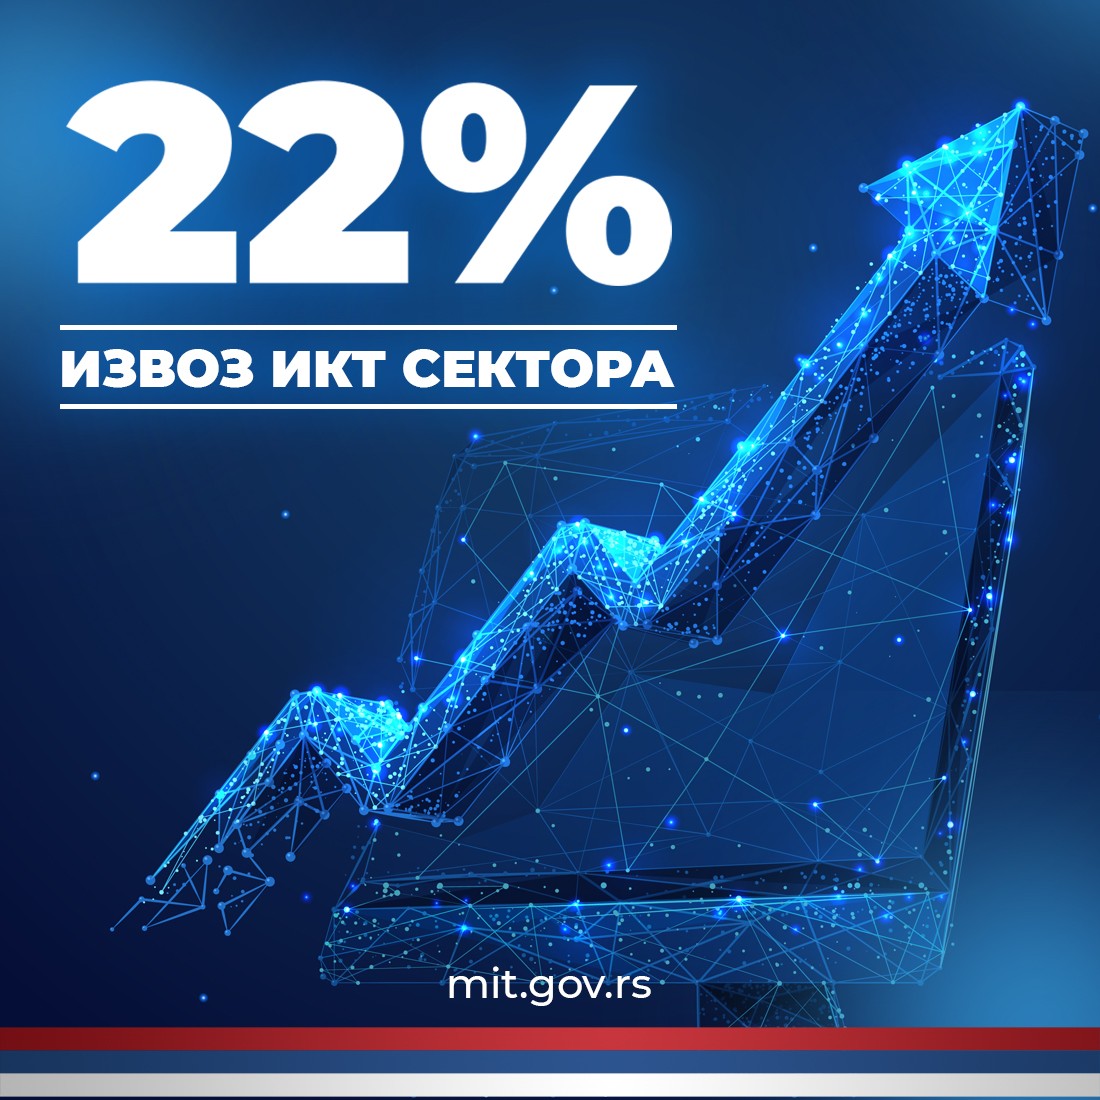 Сјајне вести за Србију! Народна банка Србије објавила је податке о извозу услуга у сектору информационо-комуникационих технологија (ИКТ) за прва два месеца 2024. године. Укупан извоз за јануар и фебруар 2024. године наставио је са интезивним растом, повећан је за 22% у односу…